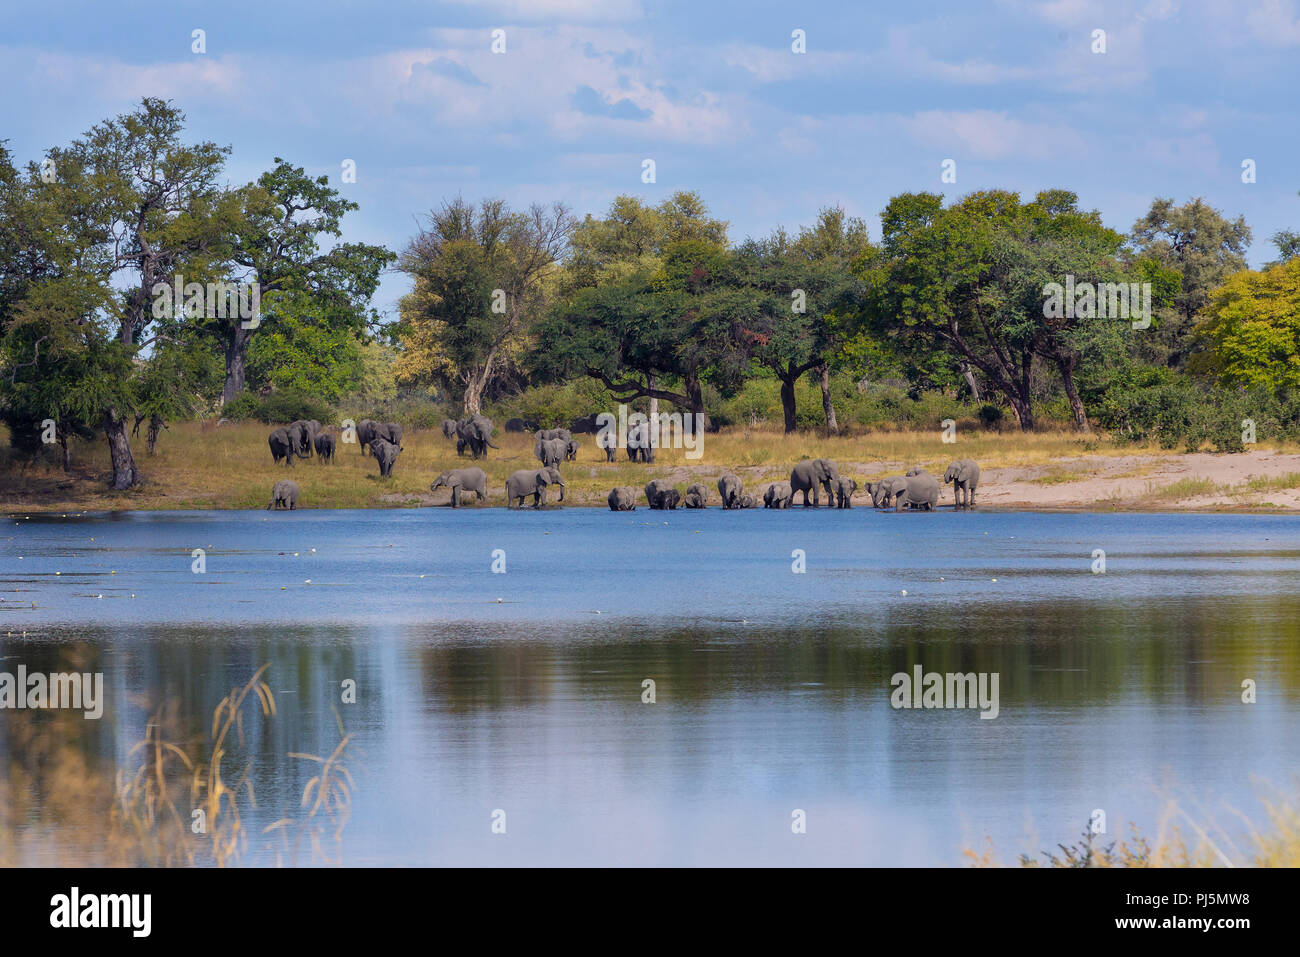 Branco di elefanti africani con neonati, Loxodonta andando fuori di waterhole in Bwabwata, Caprivi strip game park, Namibia, Africa safari wildlife e wilde Foto Stock